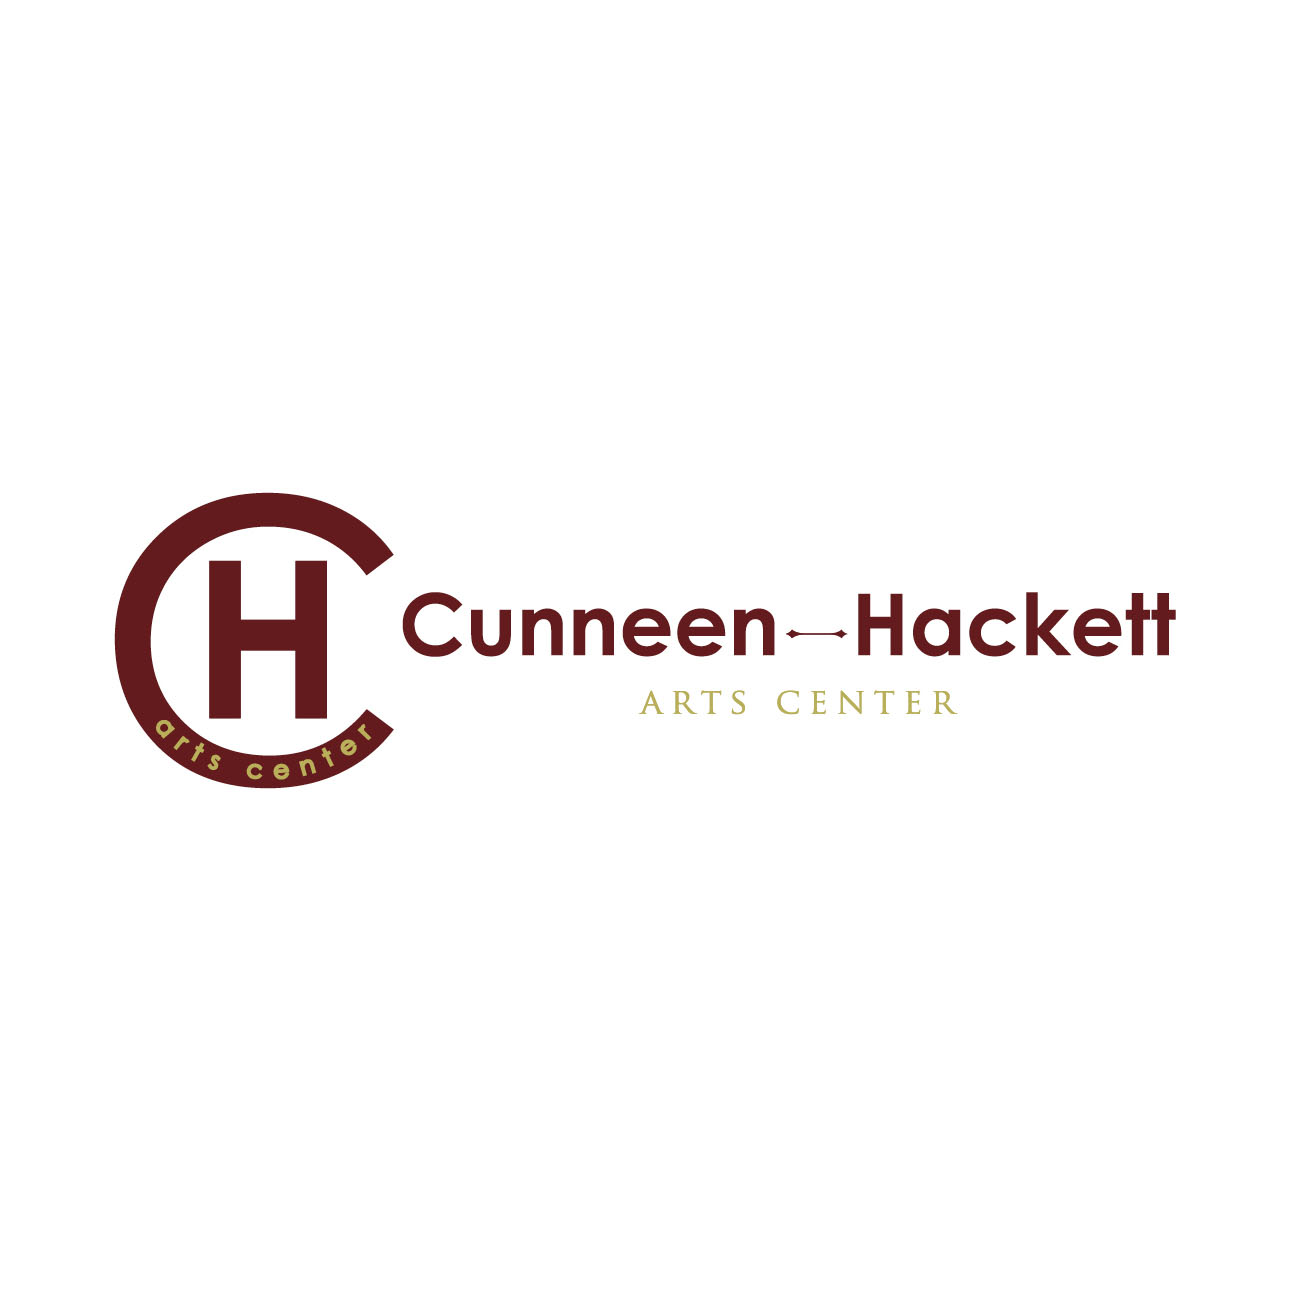 Cunneen - Hackett Arts Center2